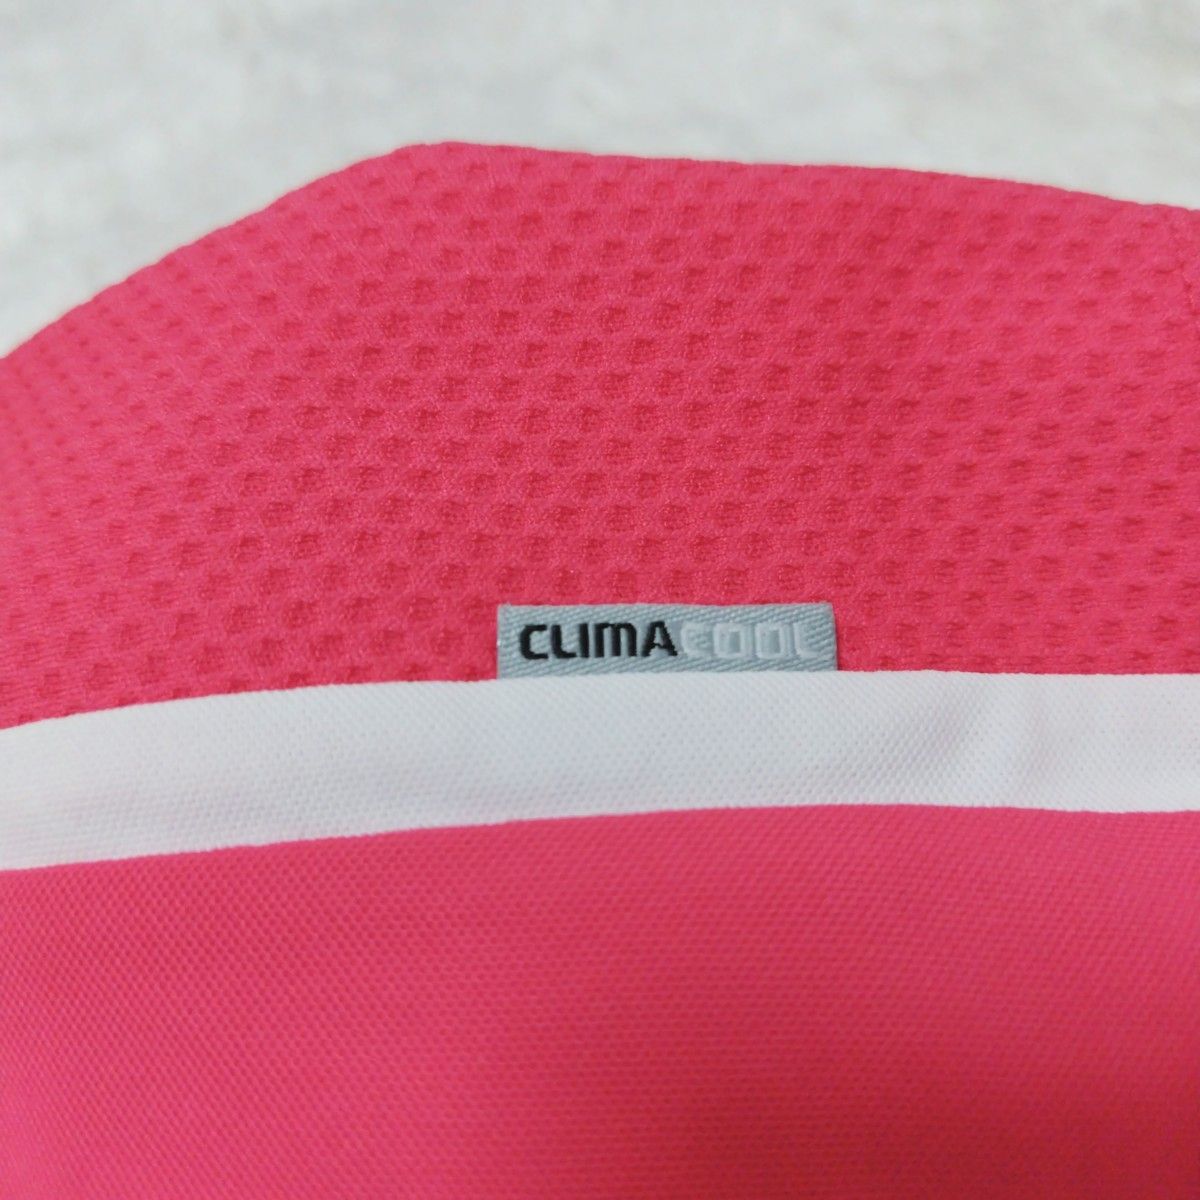 アディダス adidas 半袖 スポーツウェア Tシャツ ピンク Sサイズ